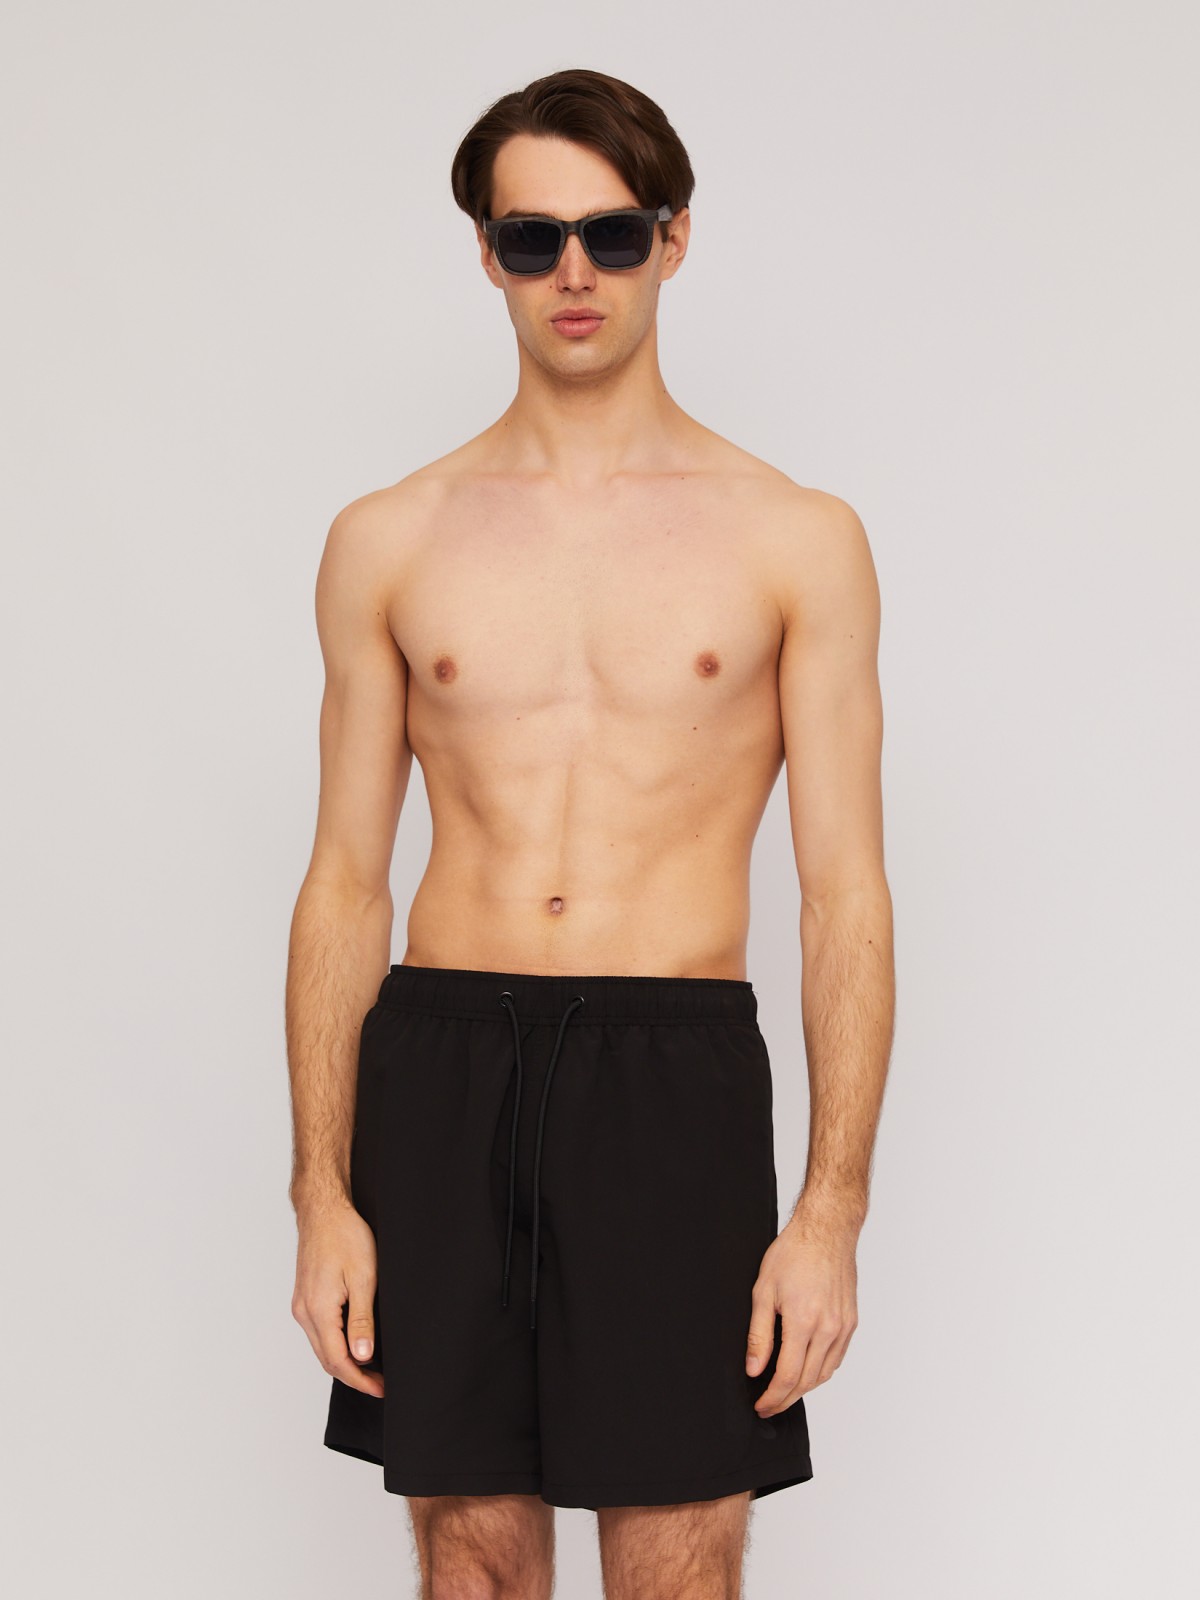 Пляжные шорты (для плавания) zolla N14247S39043, цвет черный, размер S - фото 3